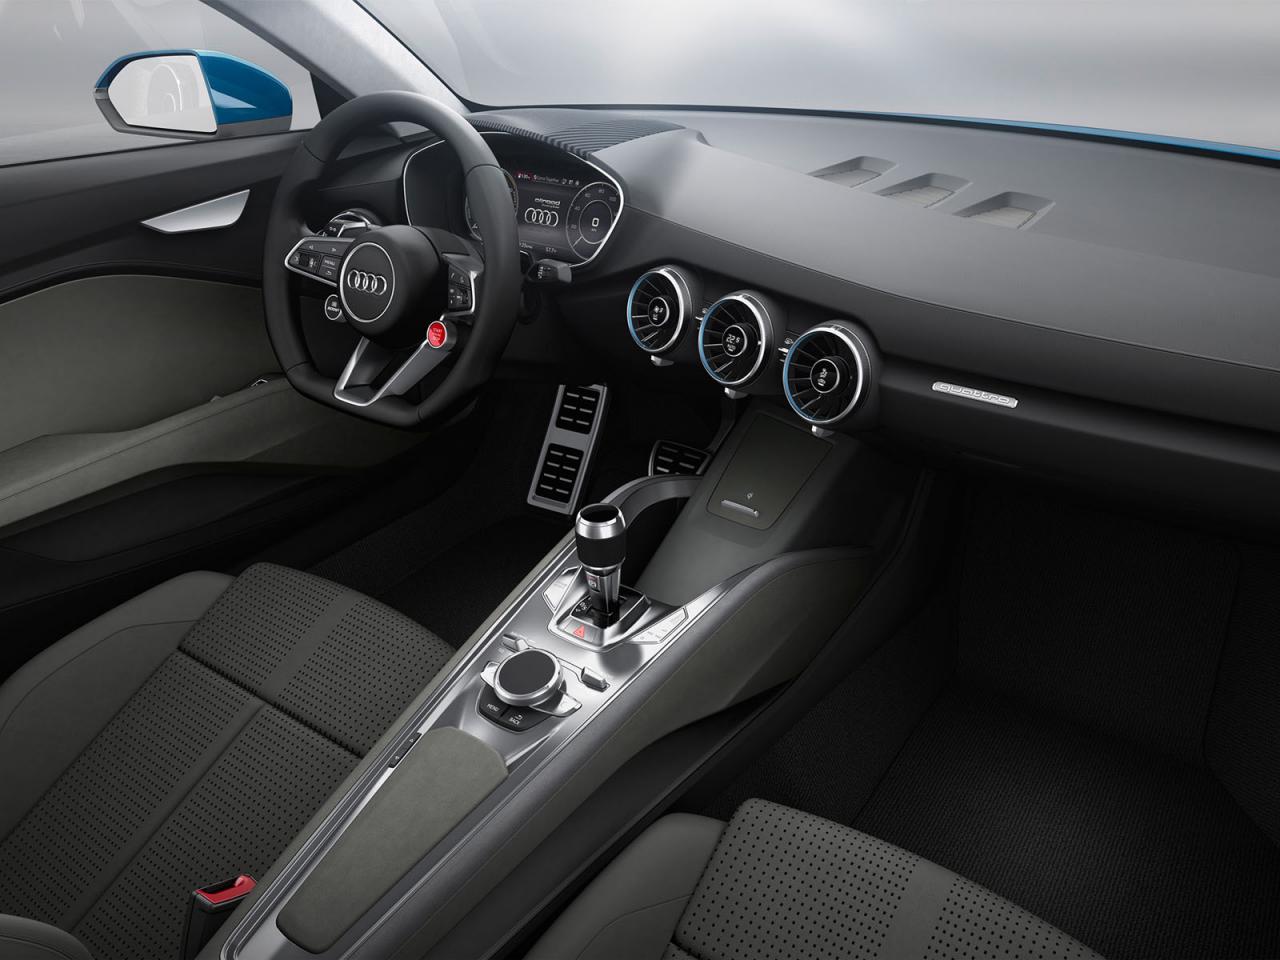 Rò rỉ hình ảnh mẫu crossover cỡ nhỏ mới của Audi 2